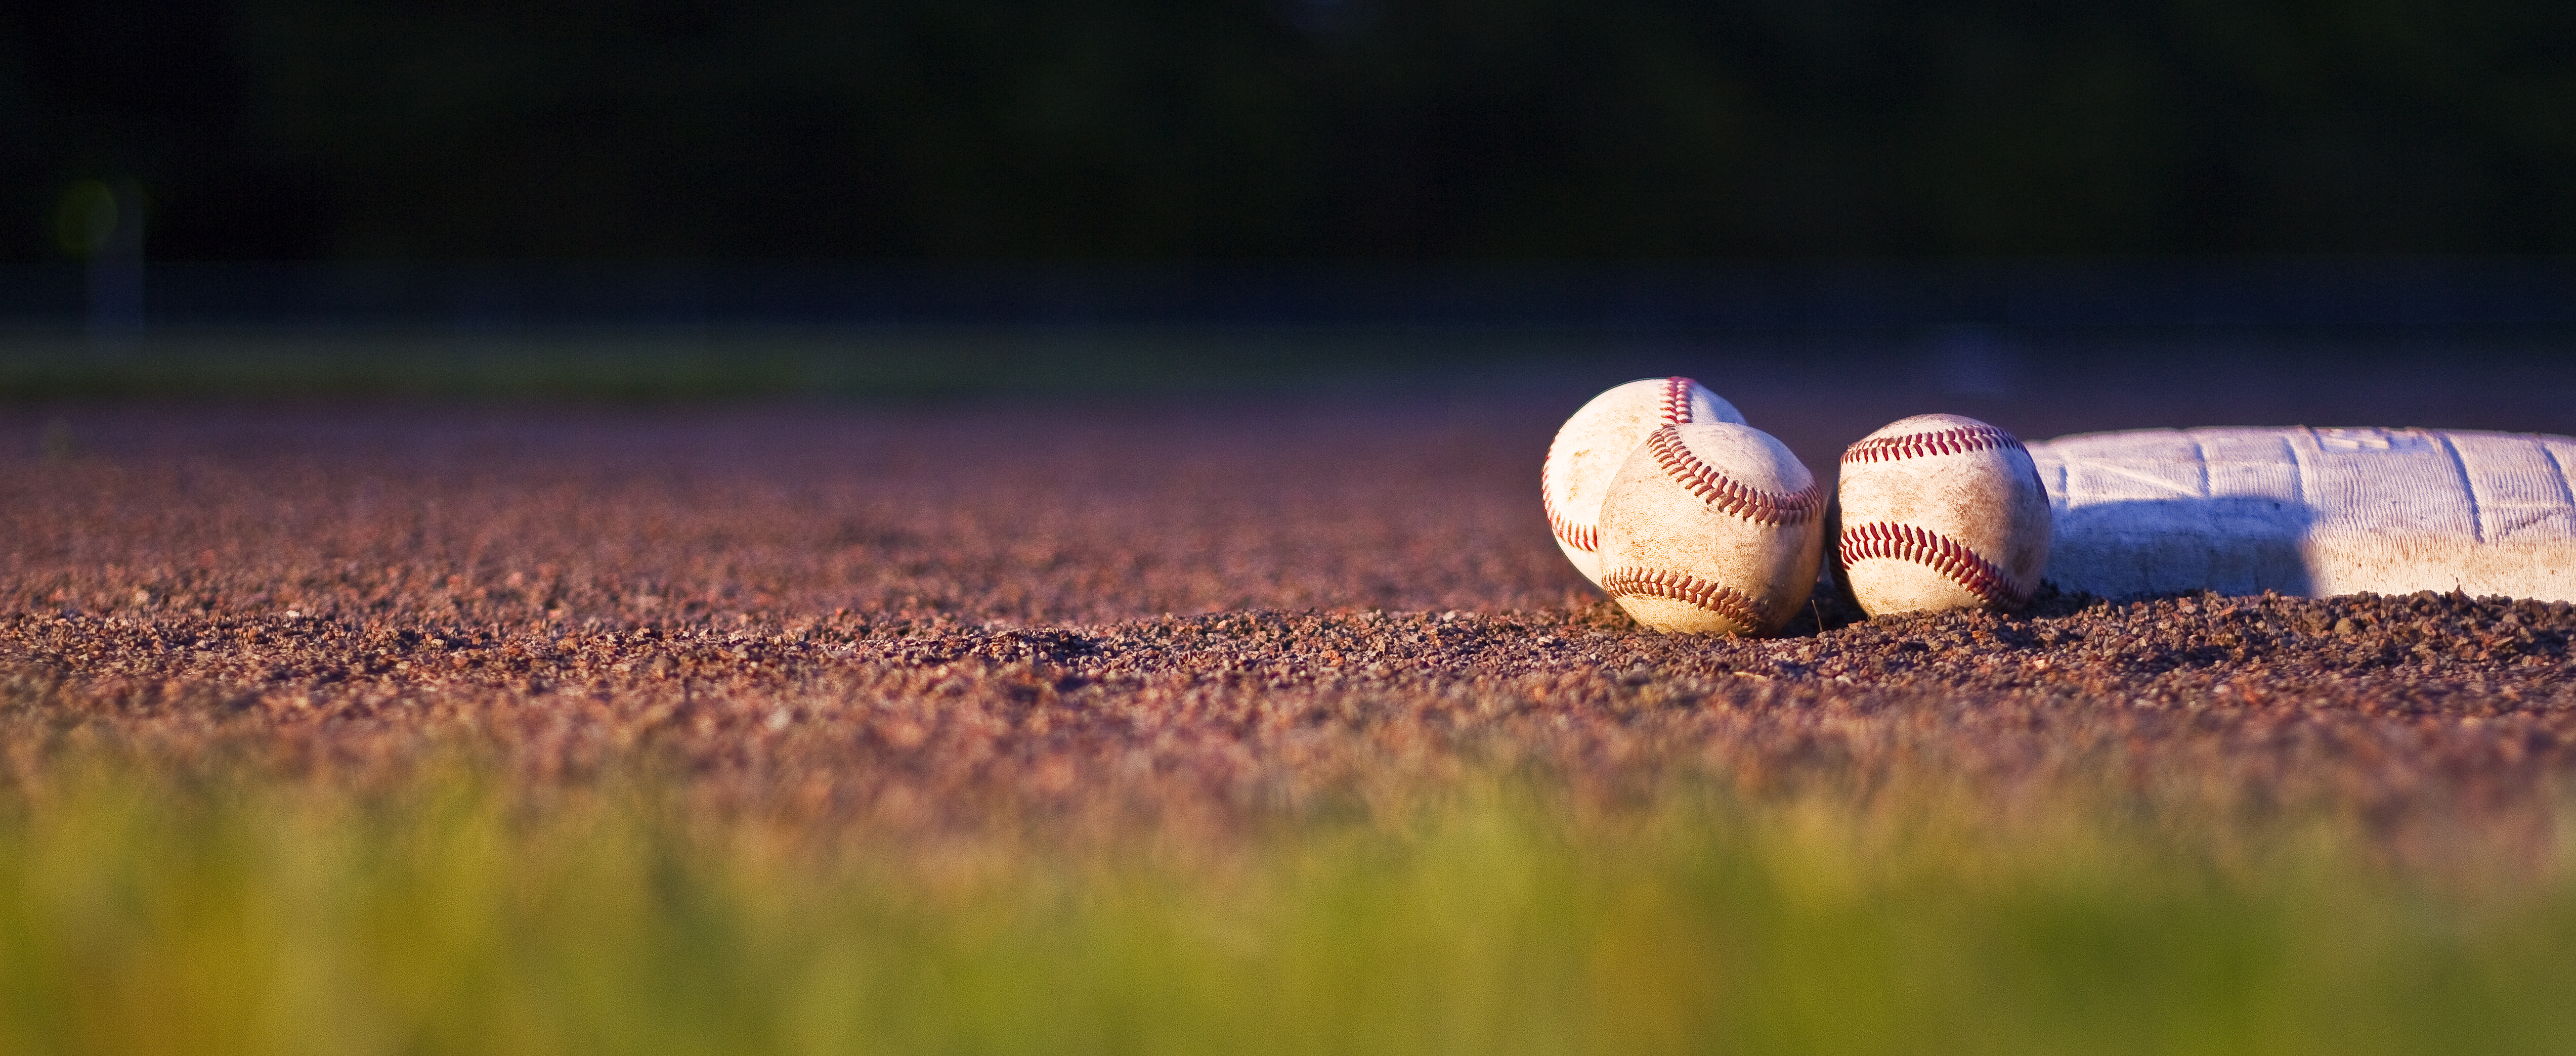 フリー写真素材|運動・スポーツ|野球|画像素材なら！無料・フリー写真素材のフリーフォト